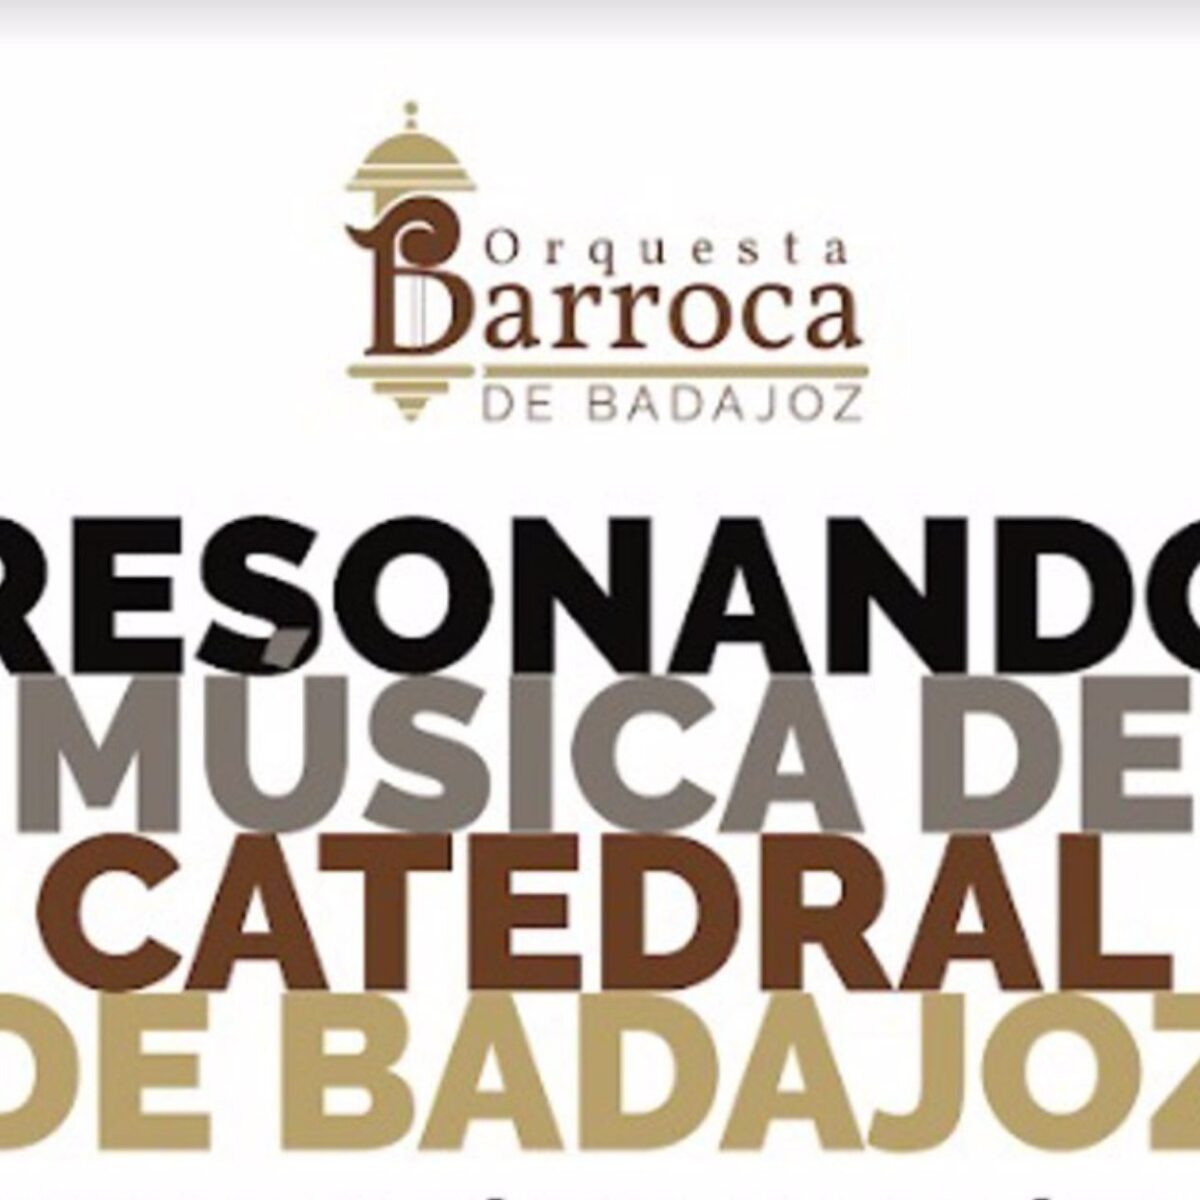 La Orquesta Barroca ofrece en la Catedral de Badajoz _ diario badajoz